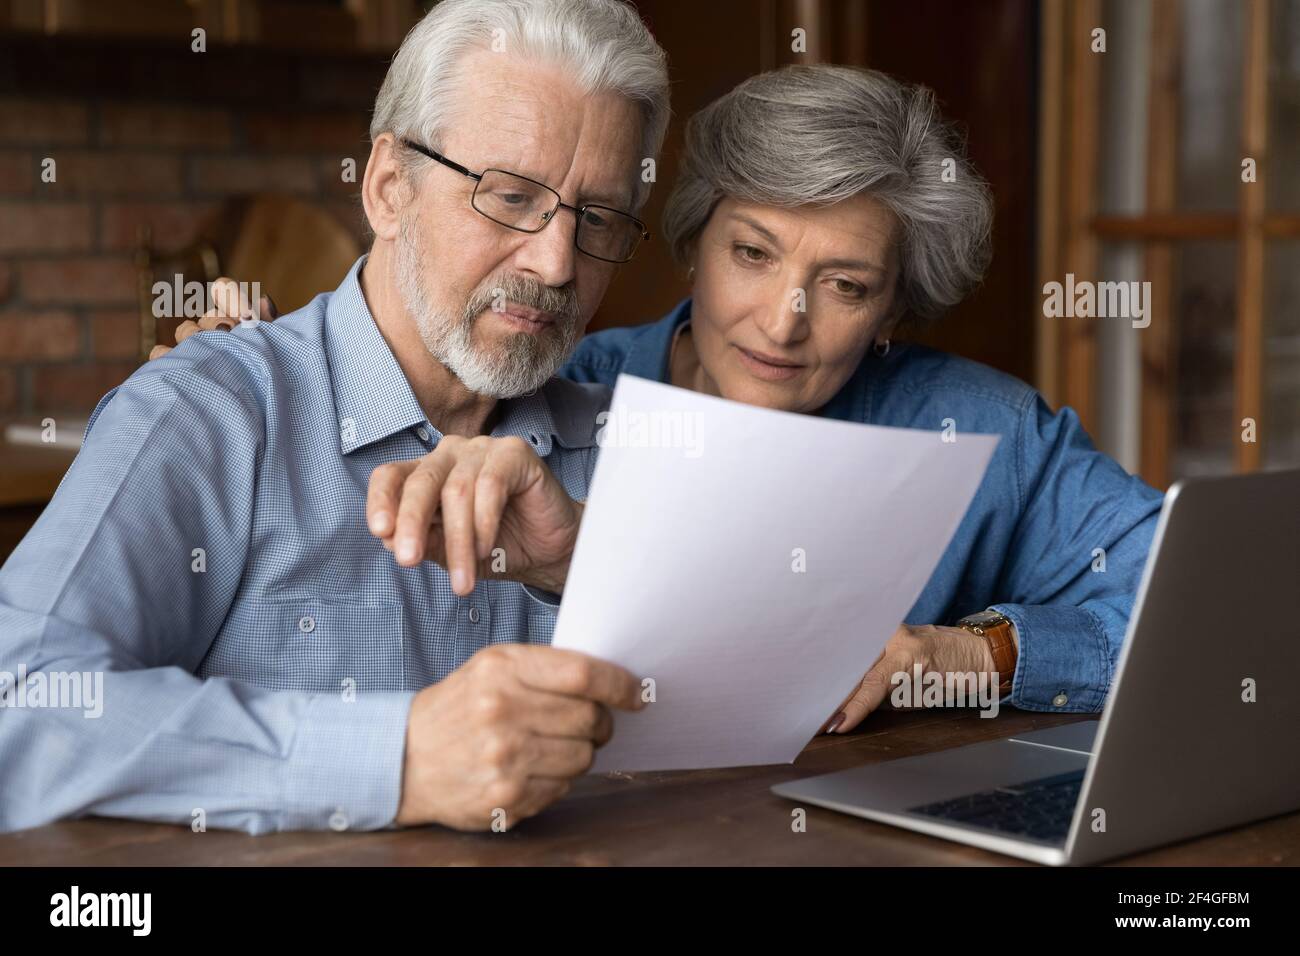 La pareja casada de edad avanzada hace papeleo involucrado en la lectura del documento Foto de stock